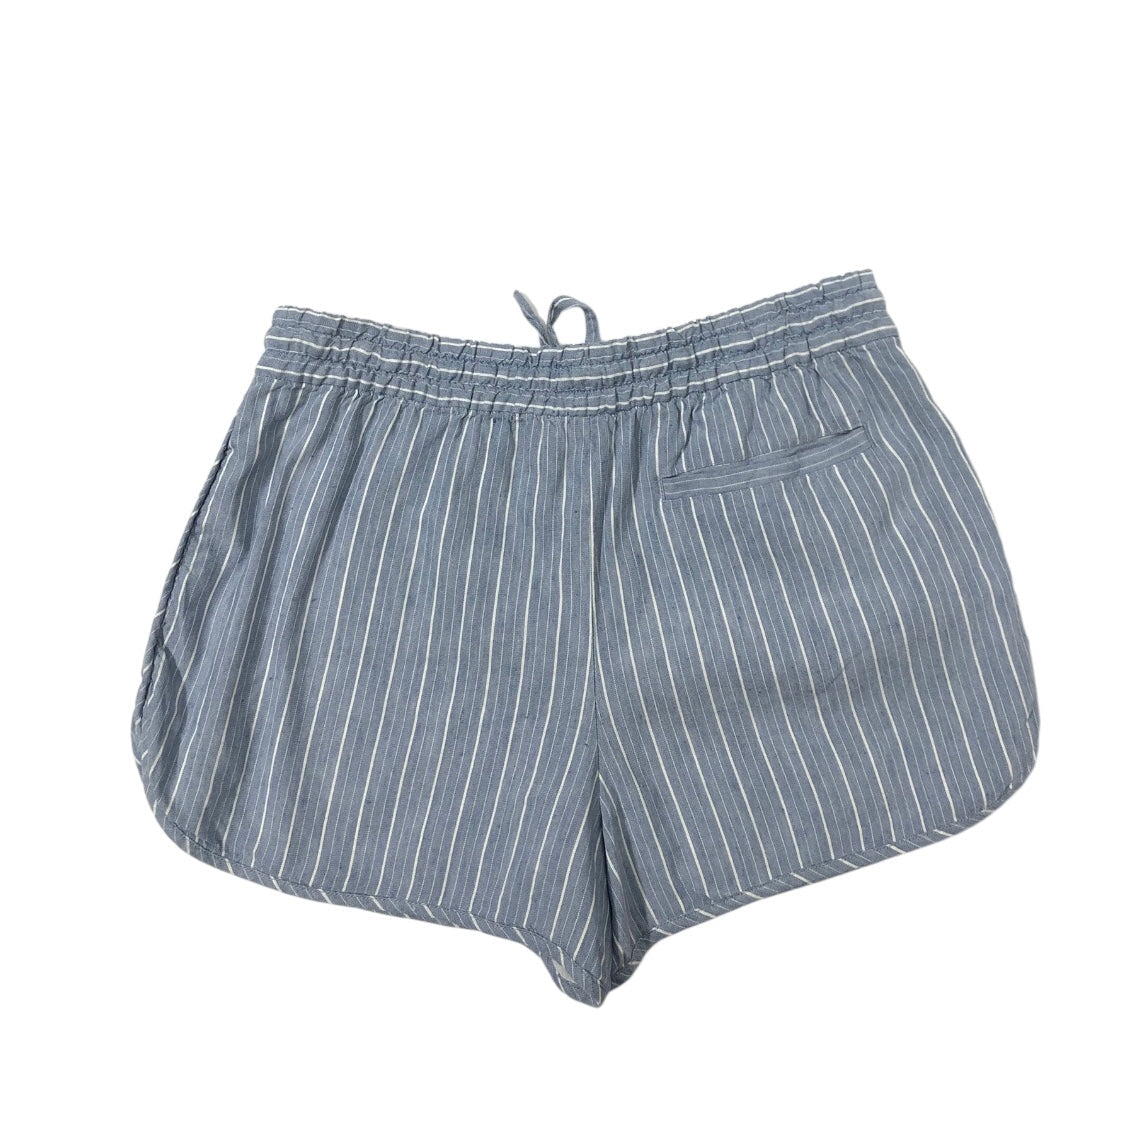 Shorts By Club Monaco  Size: S